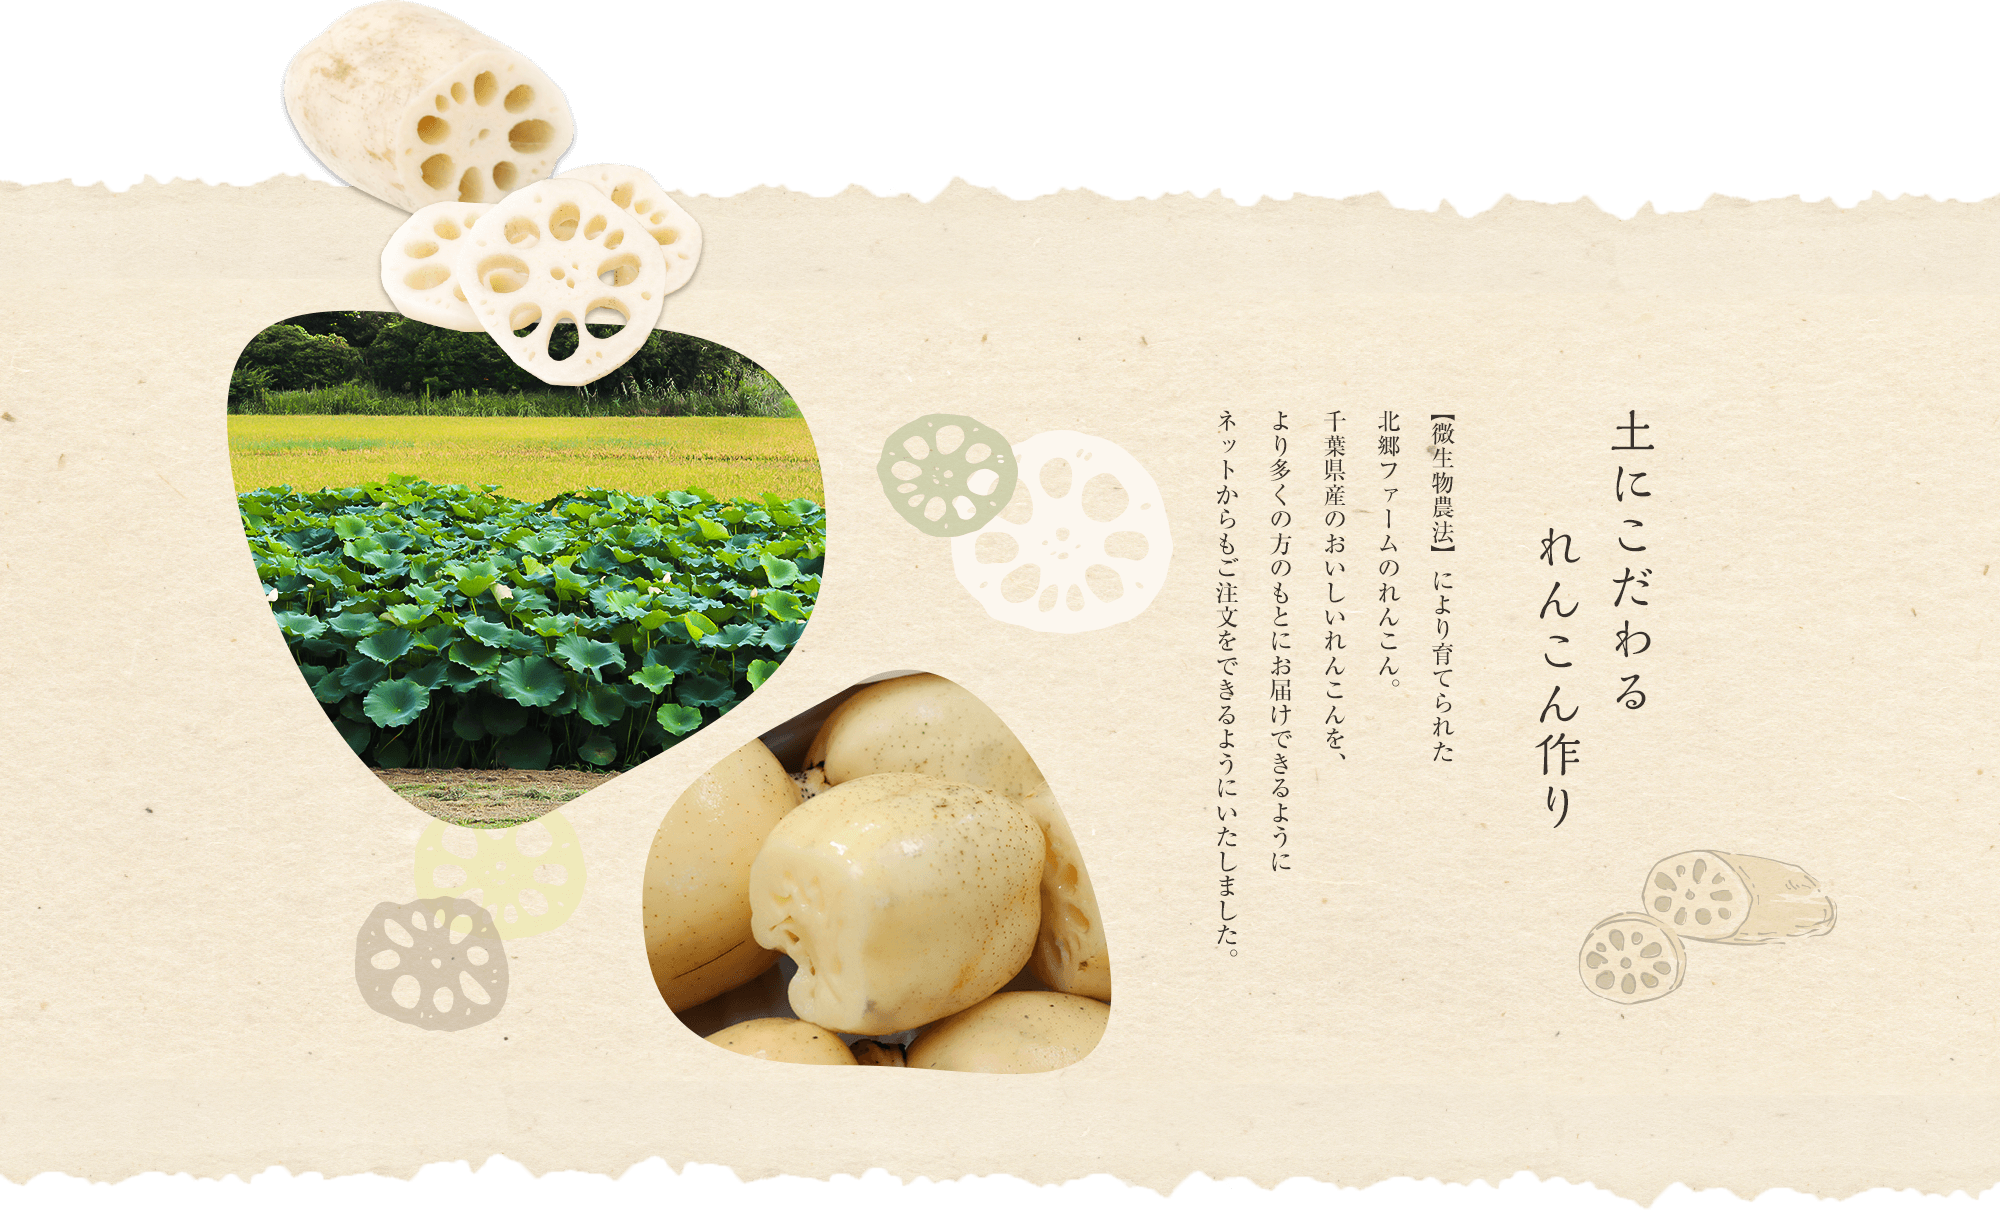 土にこだわるれんこん作り 【微生物農法】により育てられた北郷ファームのれんこん。千葉県産のおいしいれんこんを、より多くの方のもとにお届けできるようにネットからもご注文をできるようにいたしました。